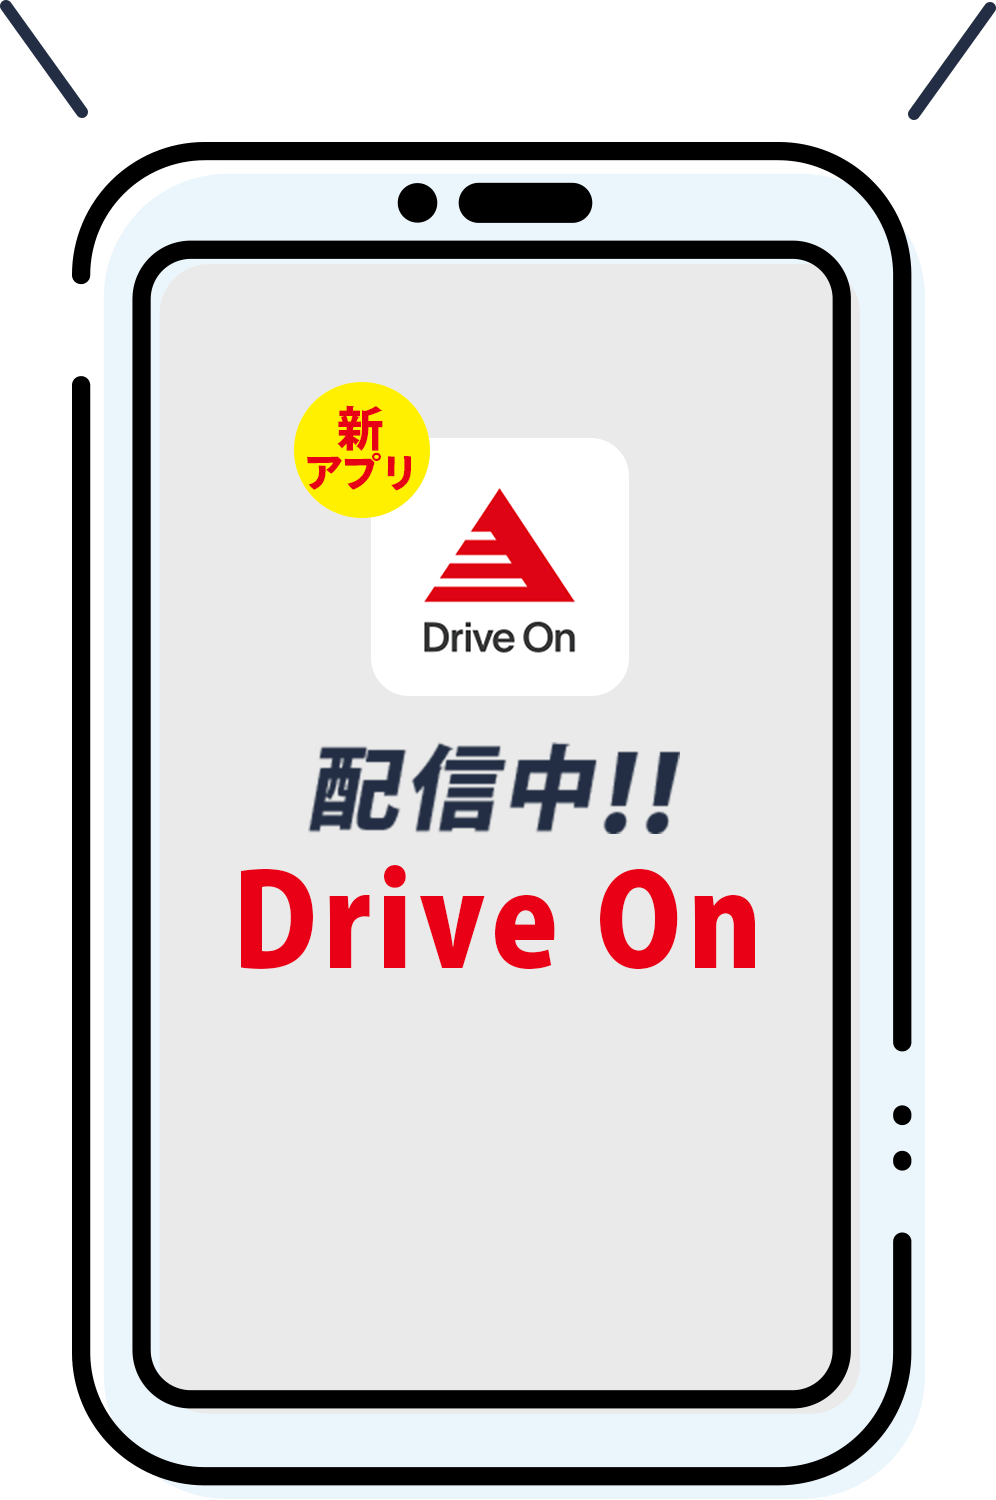 いつもの給油をお得に 新アプリ Drive On 配信中!! Drive On